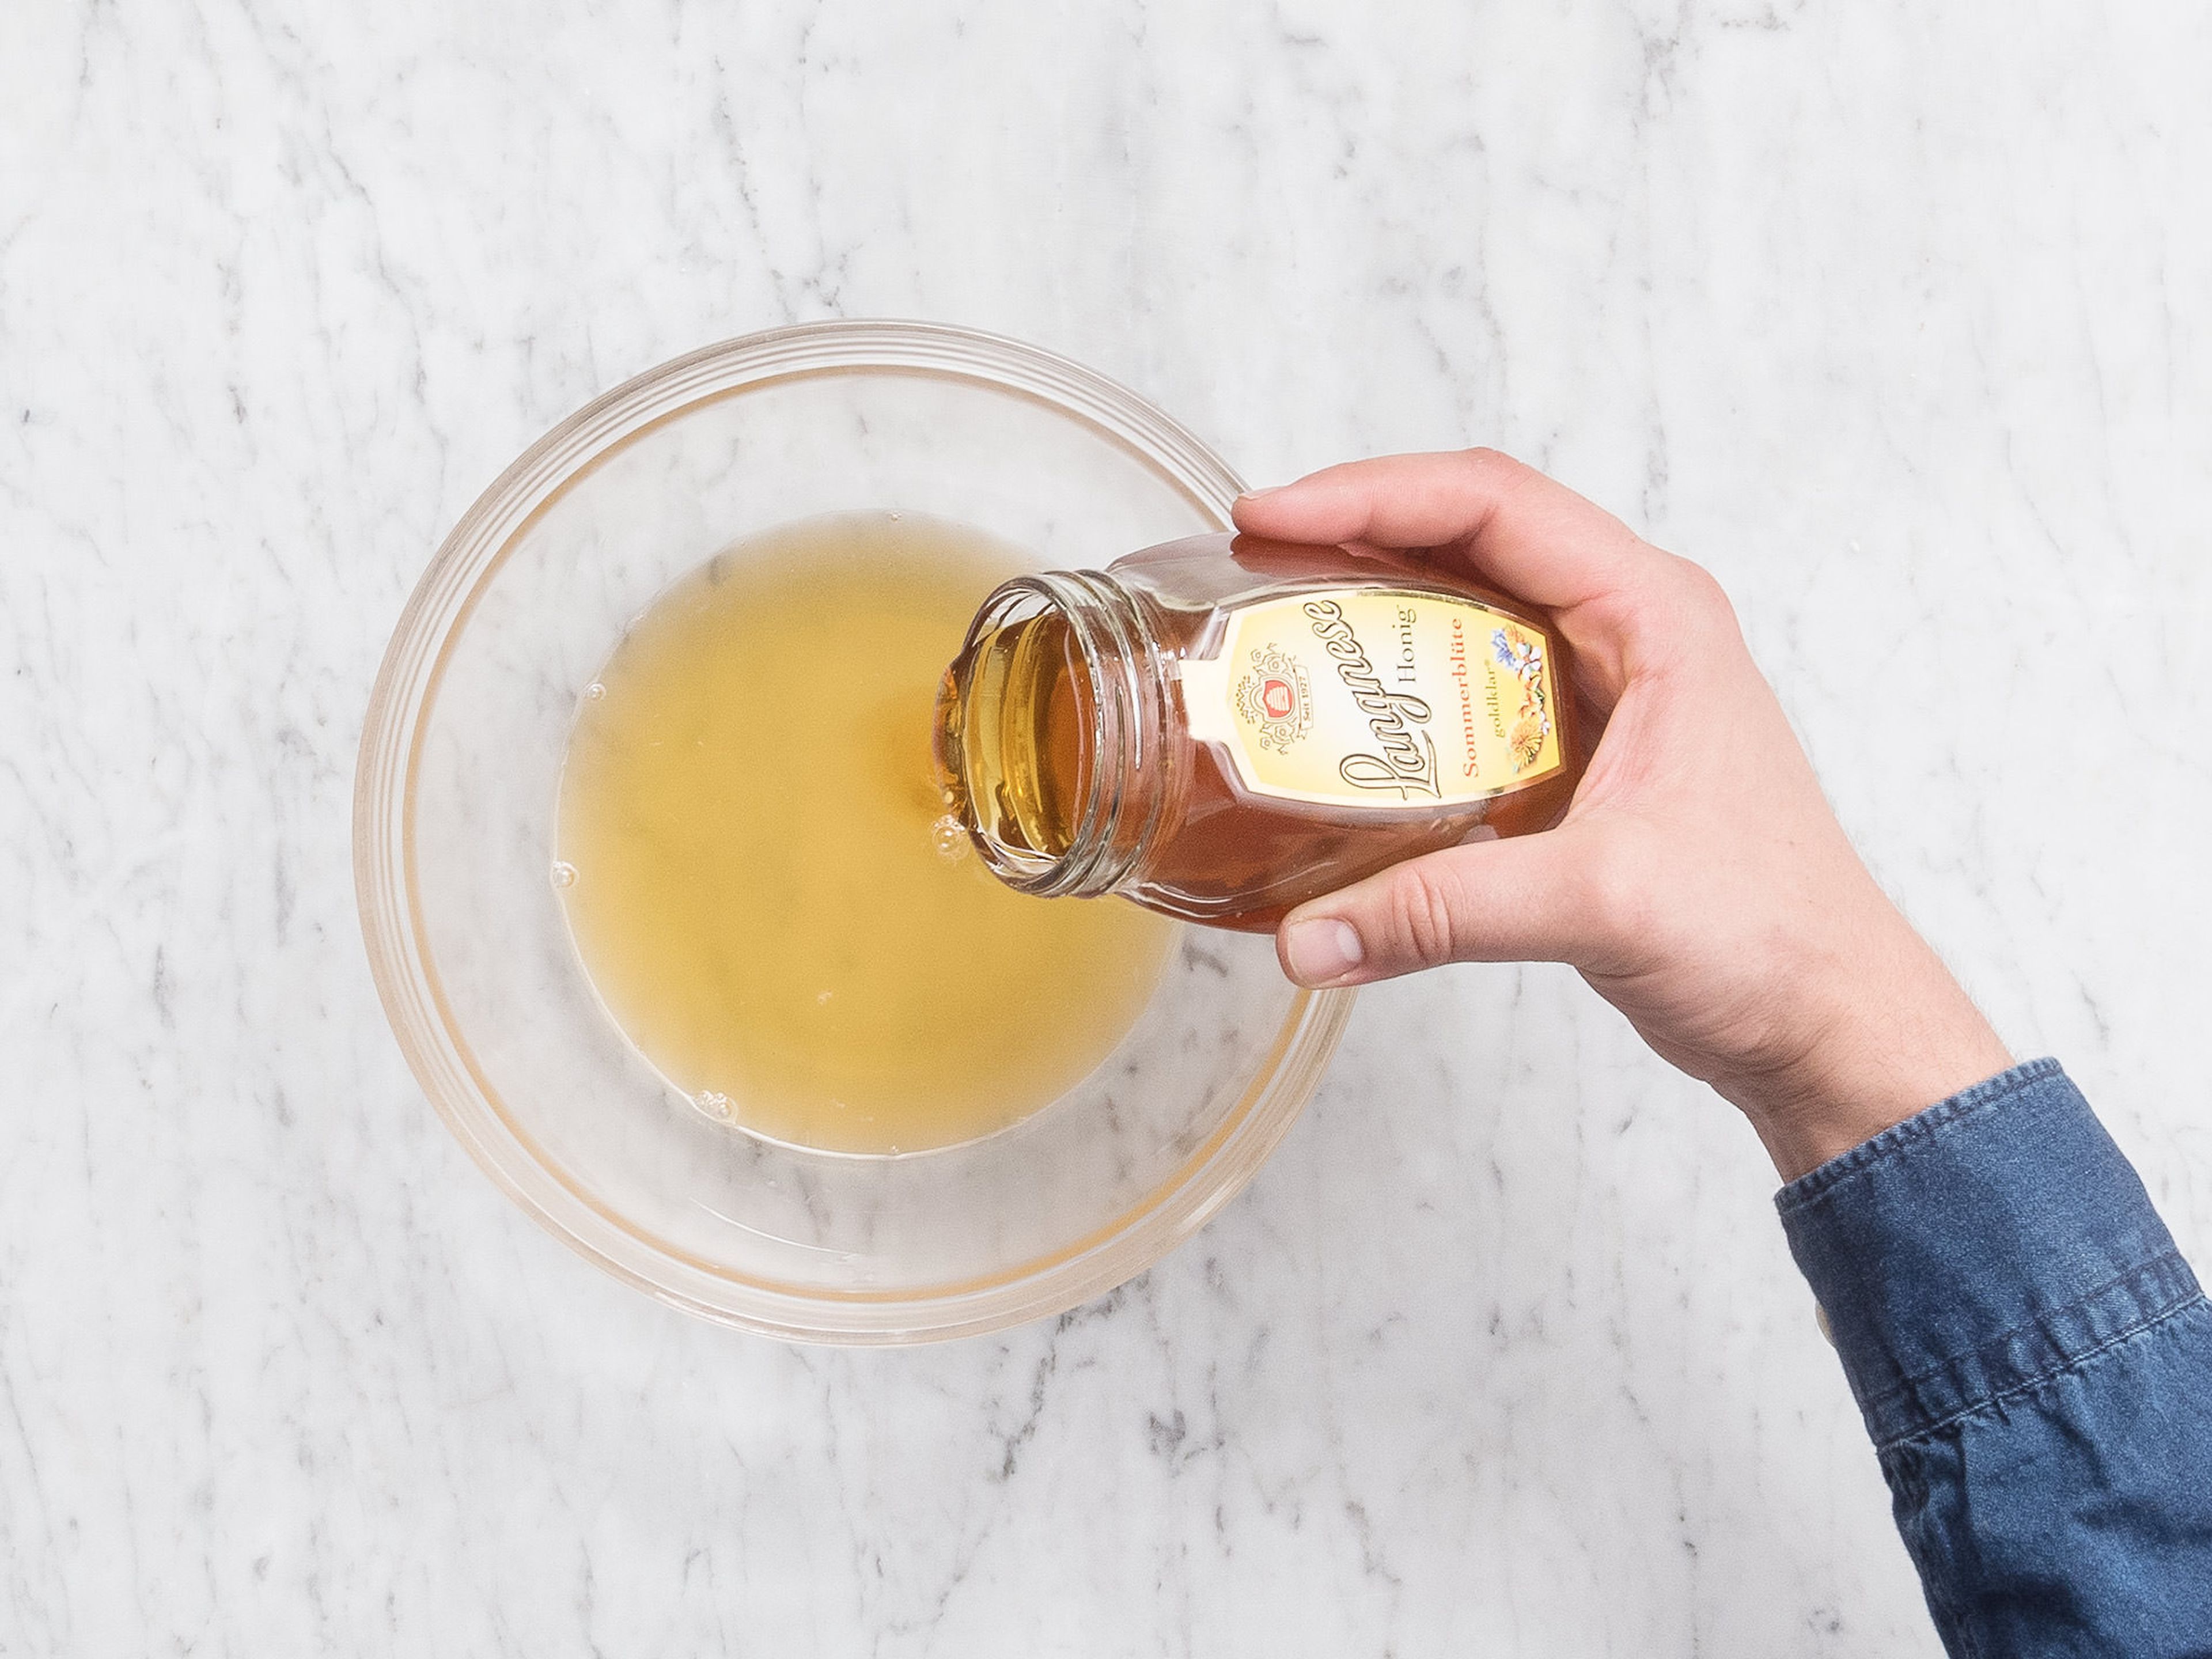 Honig, Zitronensaft, weißen Balsamicoessig und Wasser in einer Schüssel vermengen und beiseitestellen.